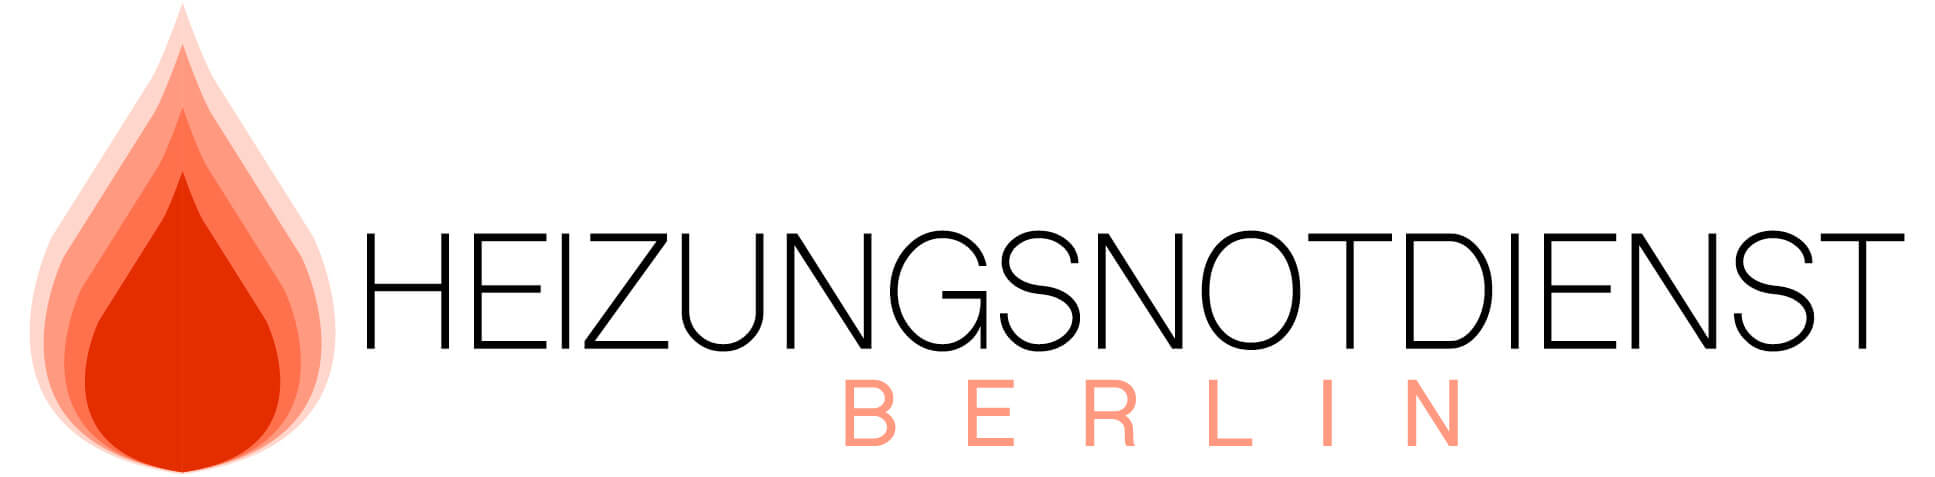 Logo_Heizungsnotdienst_Berlin.jpg